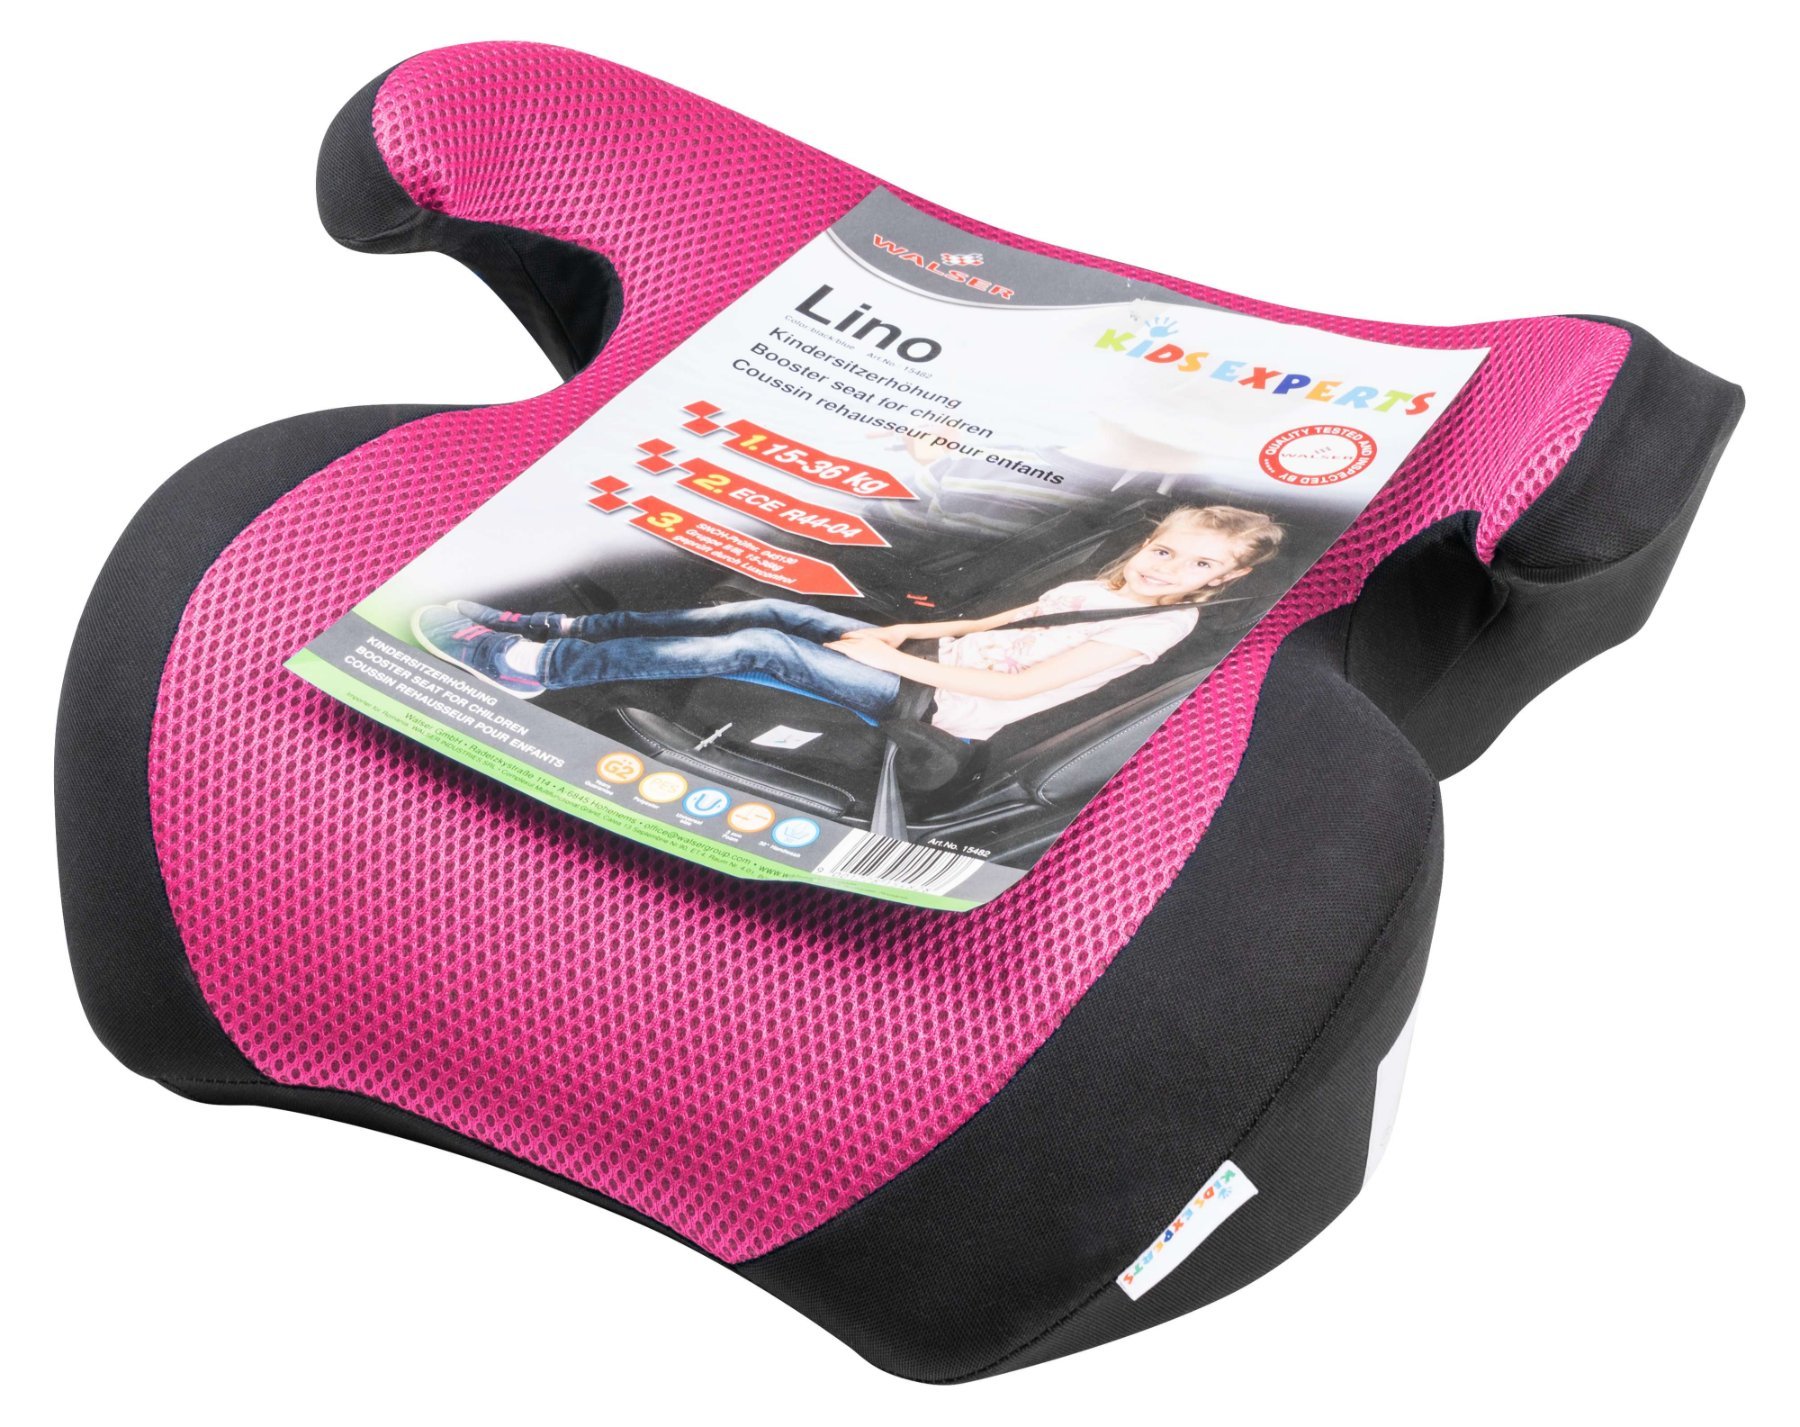 Lino kinderzitje, zitverhoger met gordelgeleider, zitverhoger voor kinderen, autostoel zwart/roze